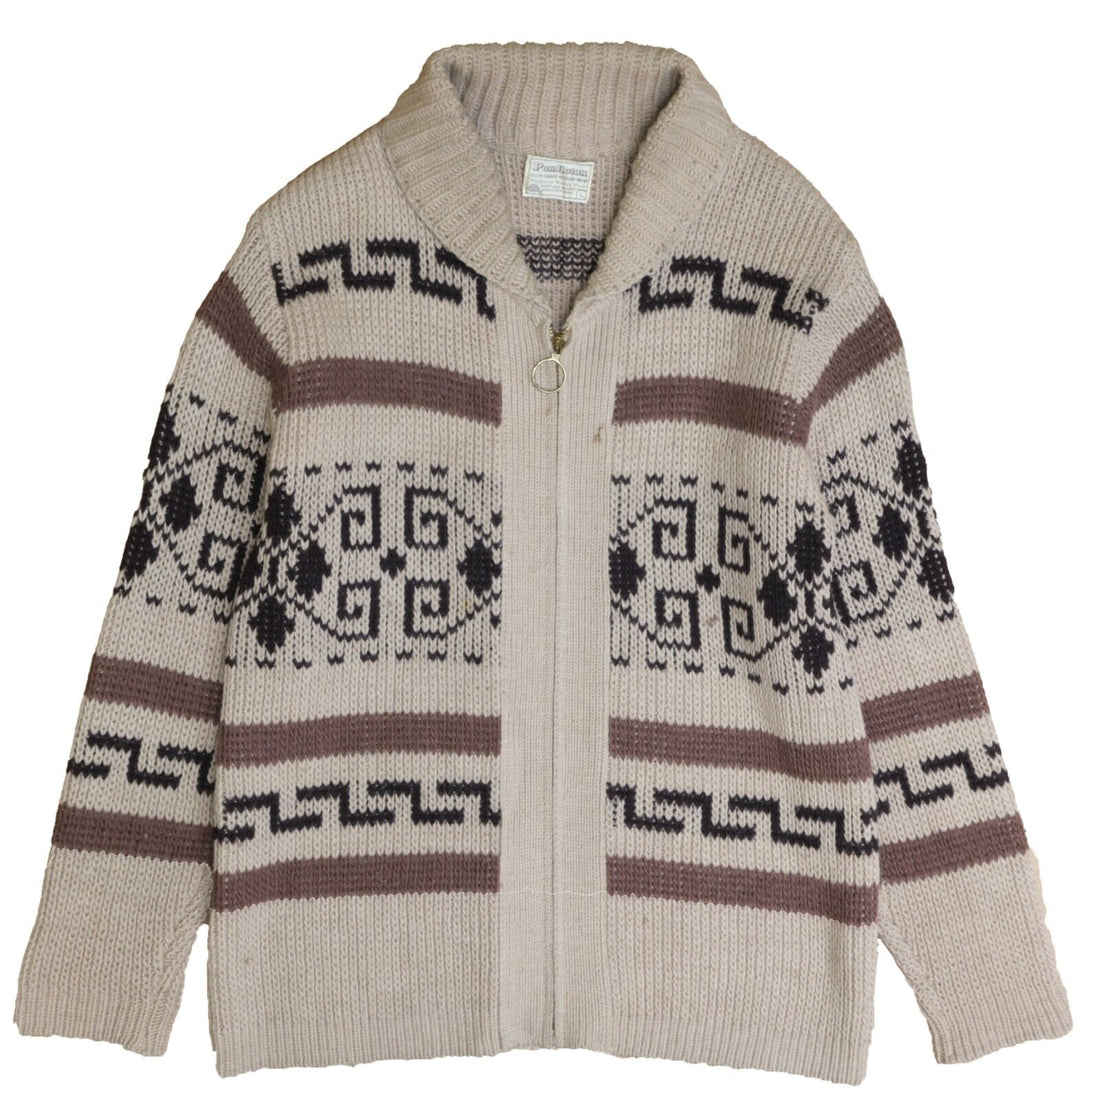 Vintage Pendleton High Grade Western Wear Wool Knit Cowichan Sweater Size Large